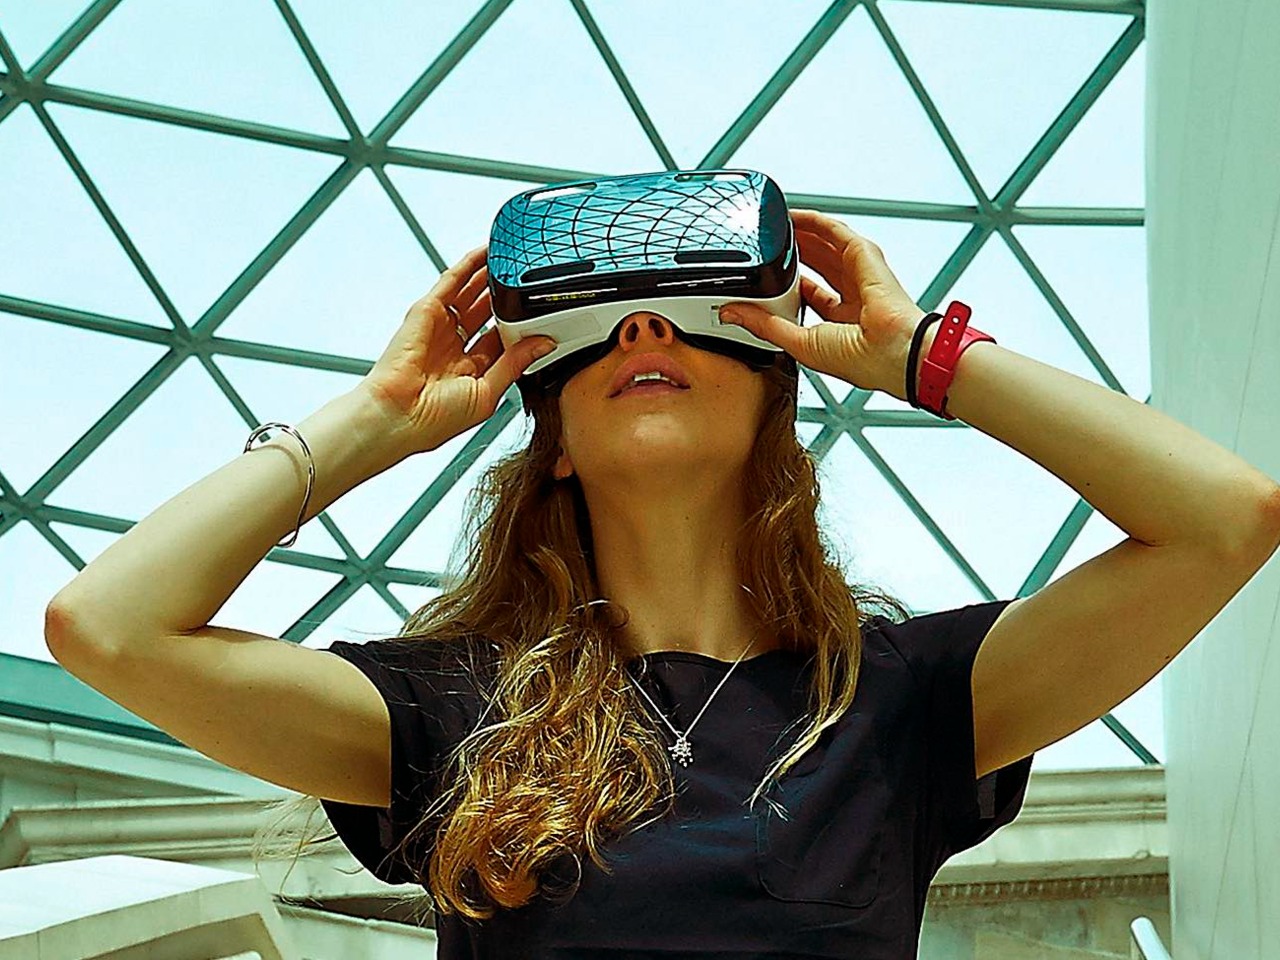 Будущее уже наступило: VR-тур в Музее космонавтики | Цена 6875₽, отзывы, описание экскурсии